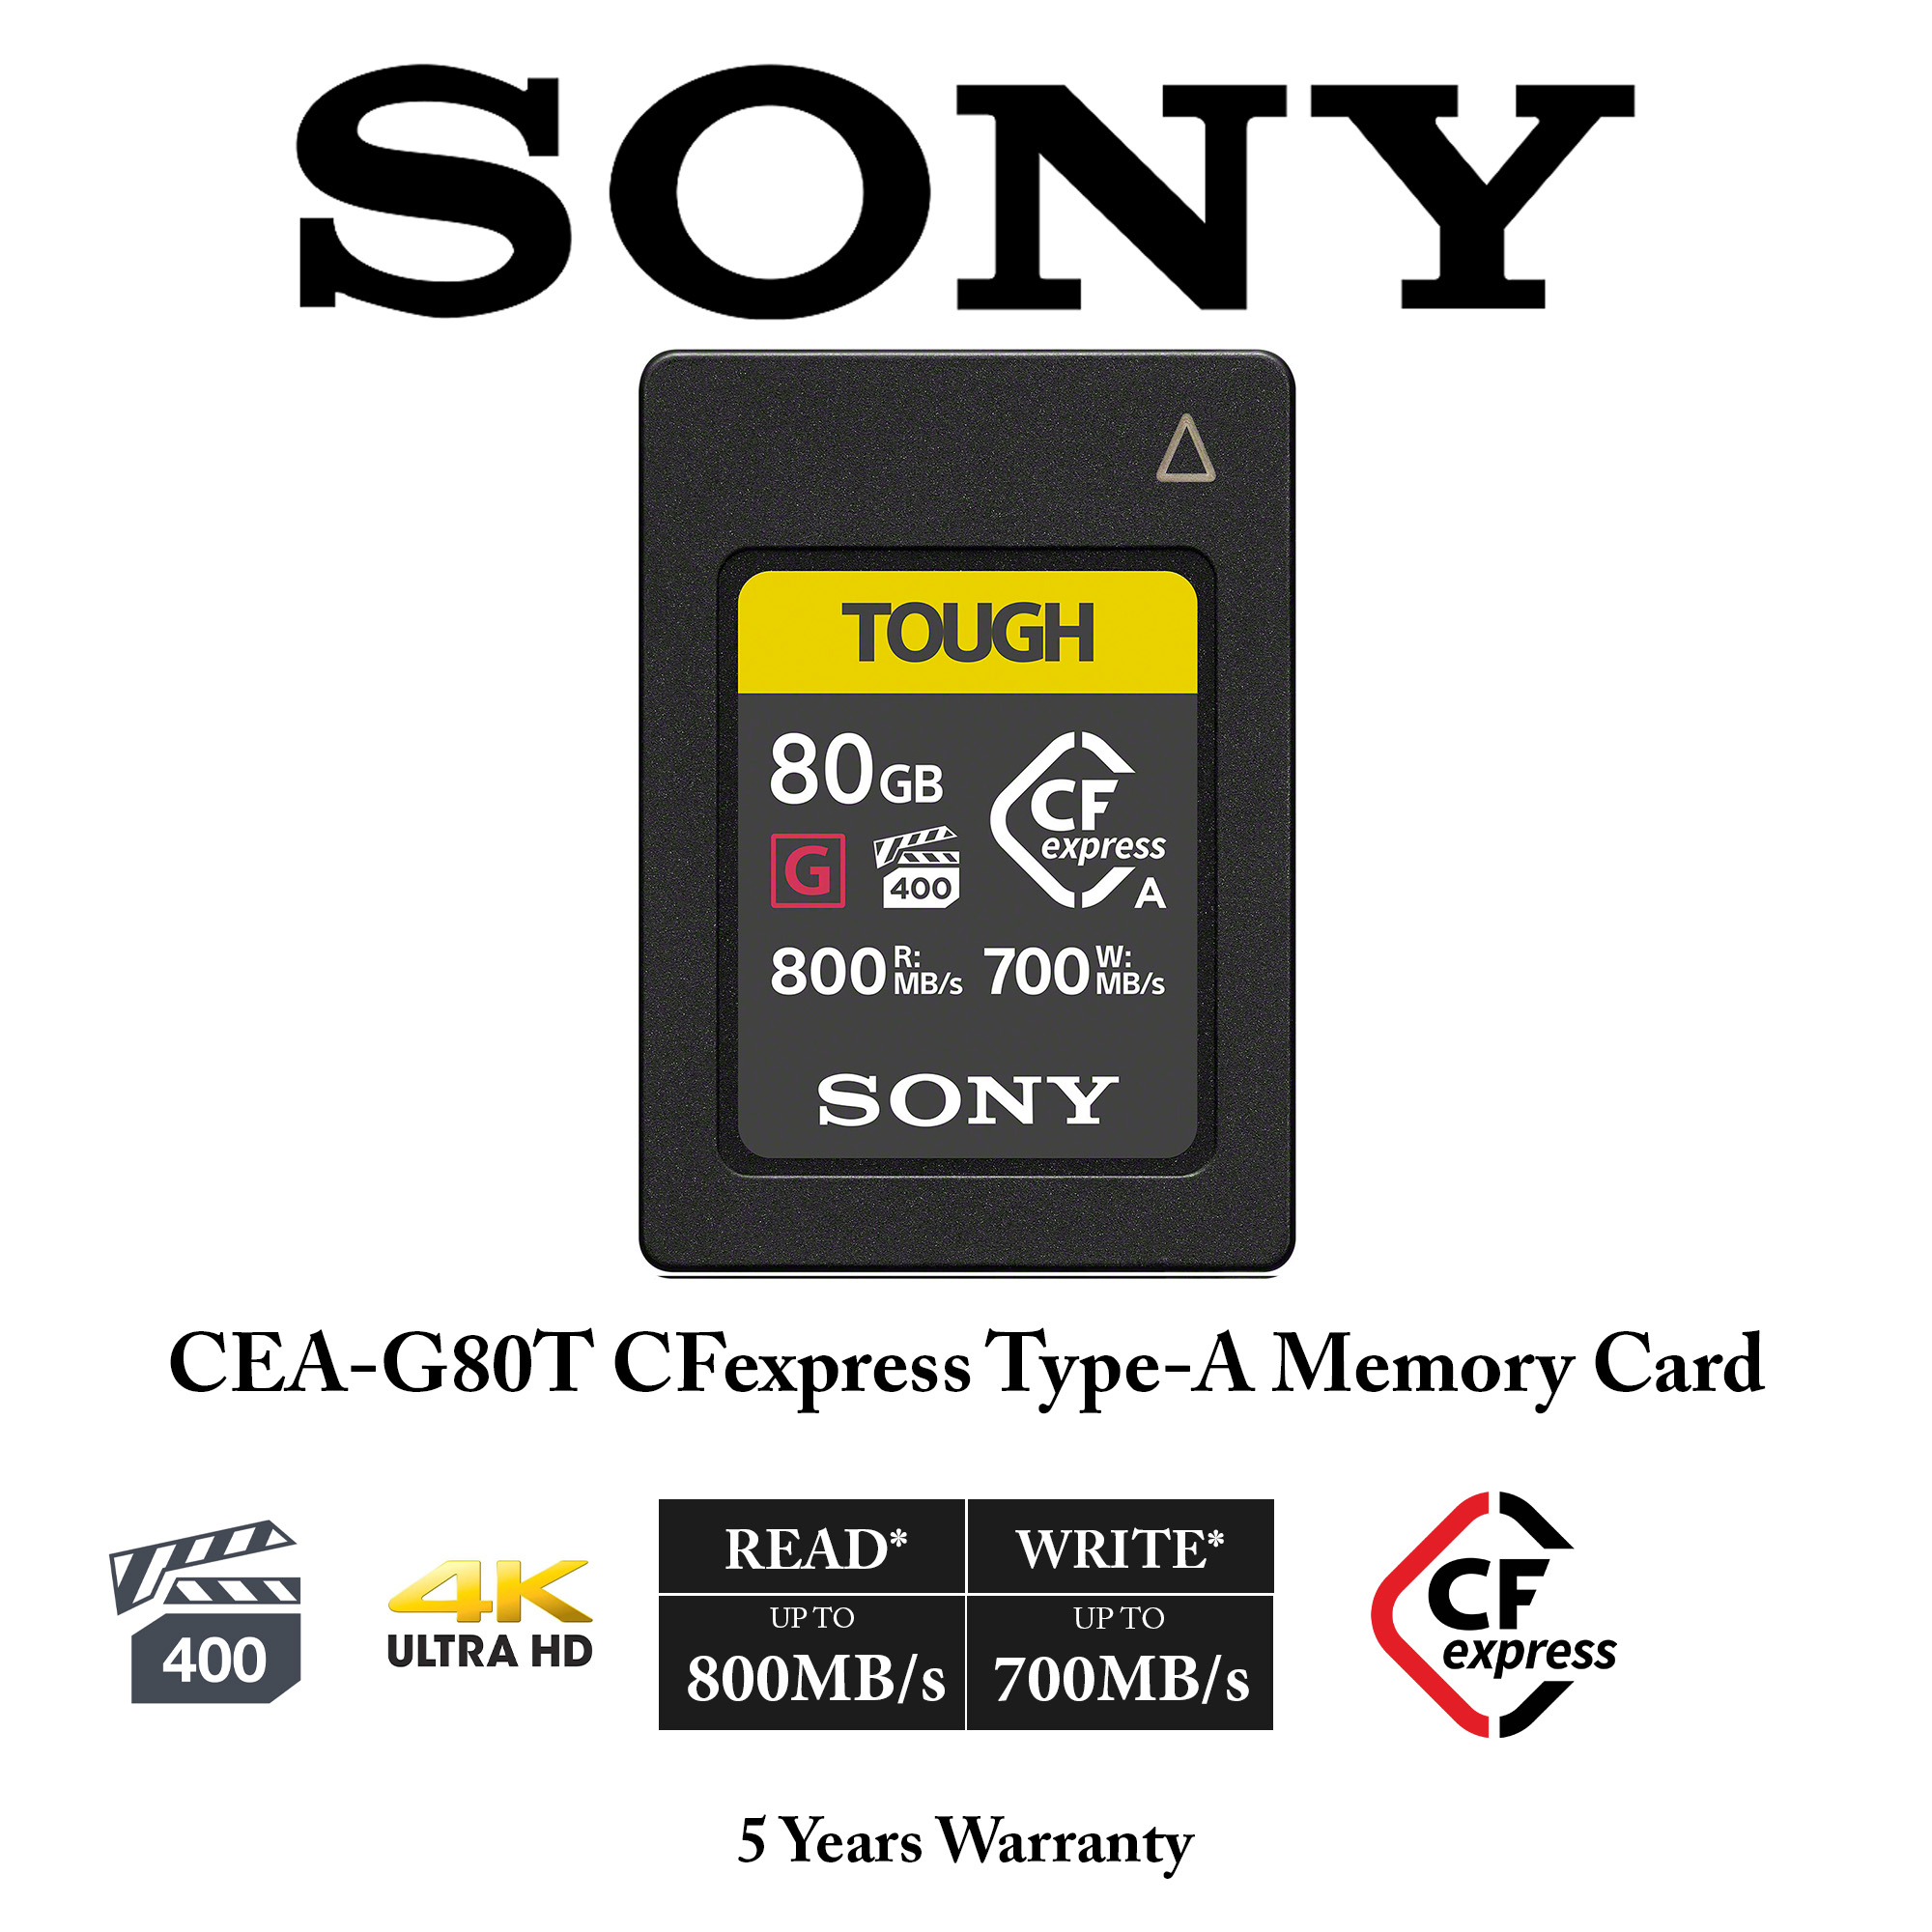 ソニーCFexpress TypeAカードCEA-G80T TOUGH 80GB - その他